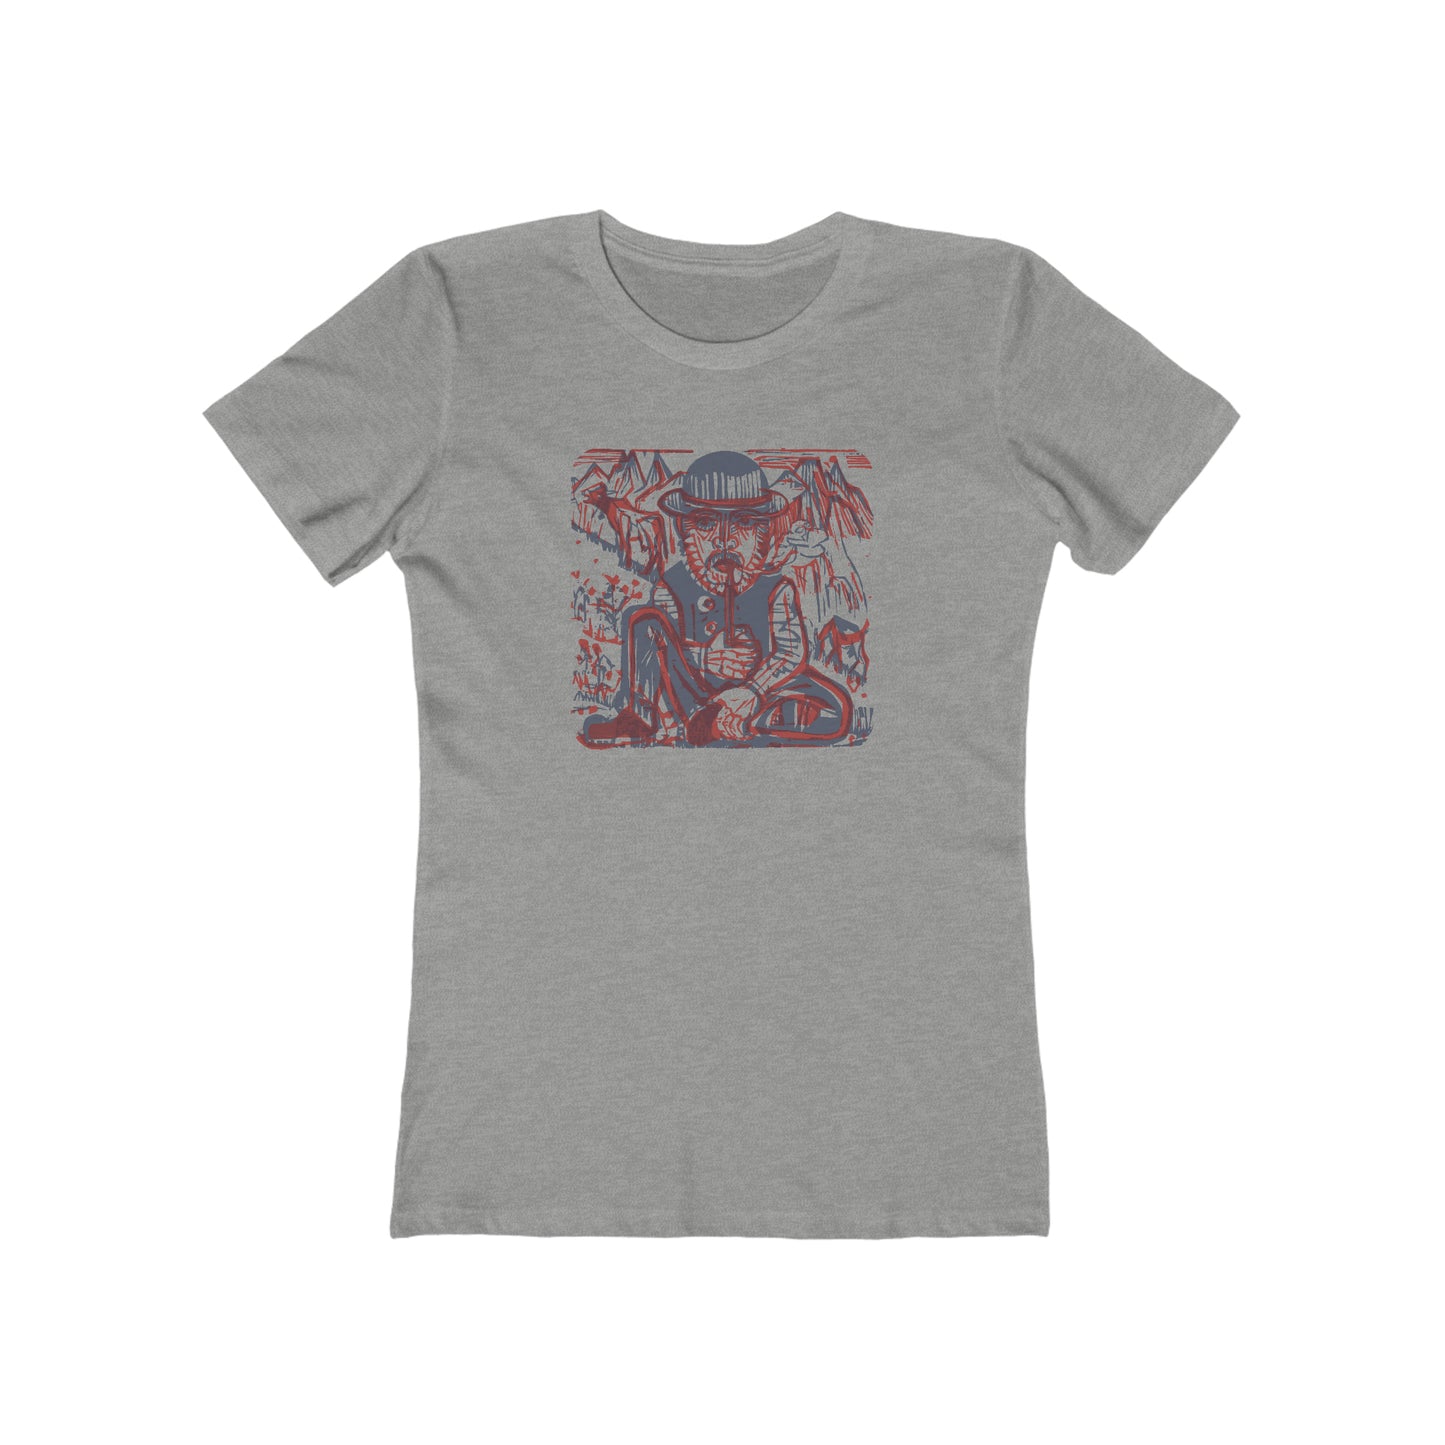 Mountain Man - Women's T-Shirt